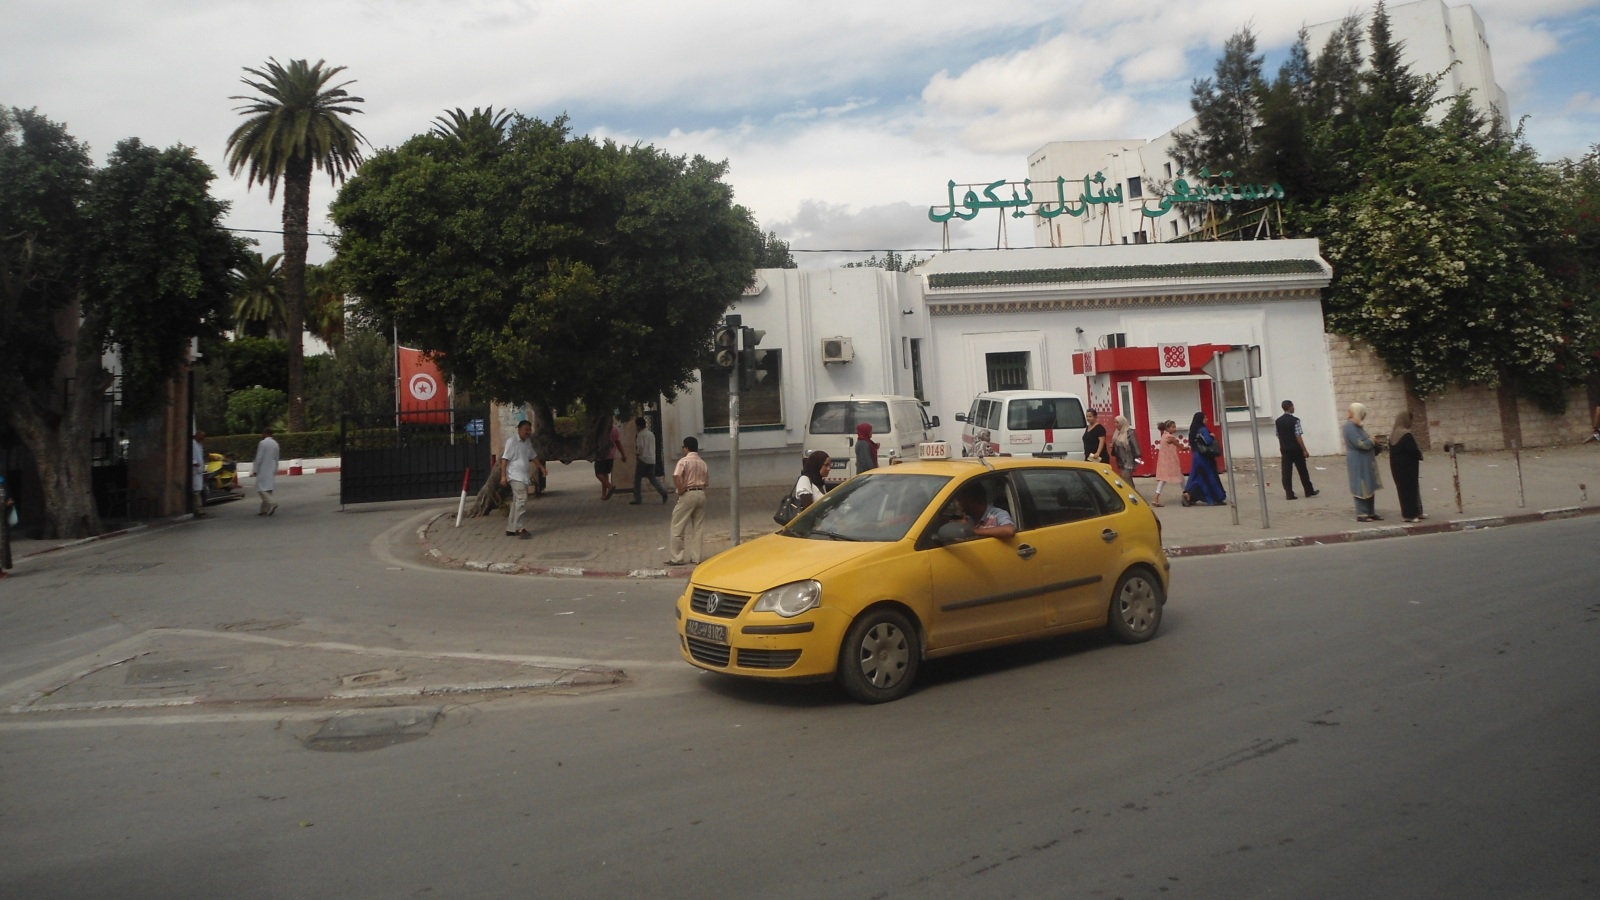 ‪مستشفى شارل نيكول الأكبر في العاصمة تونس والأكثر ازدحاما (‬ الألمانية)